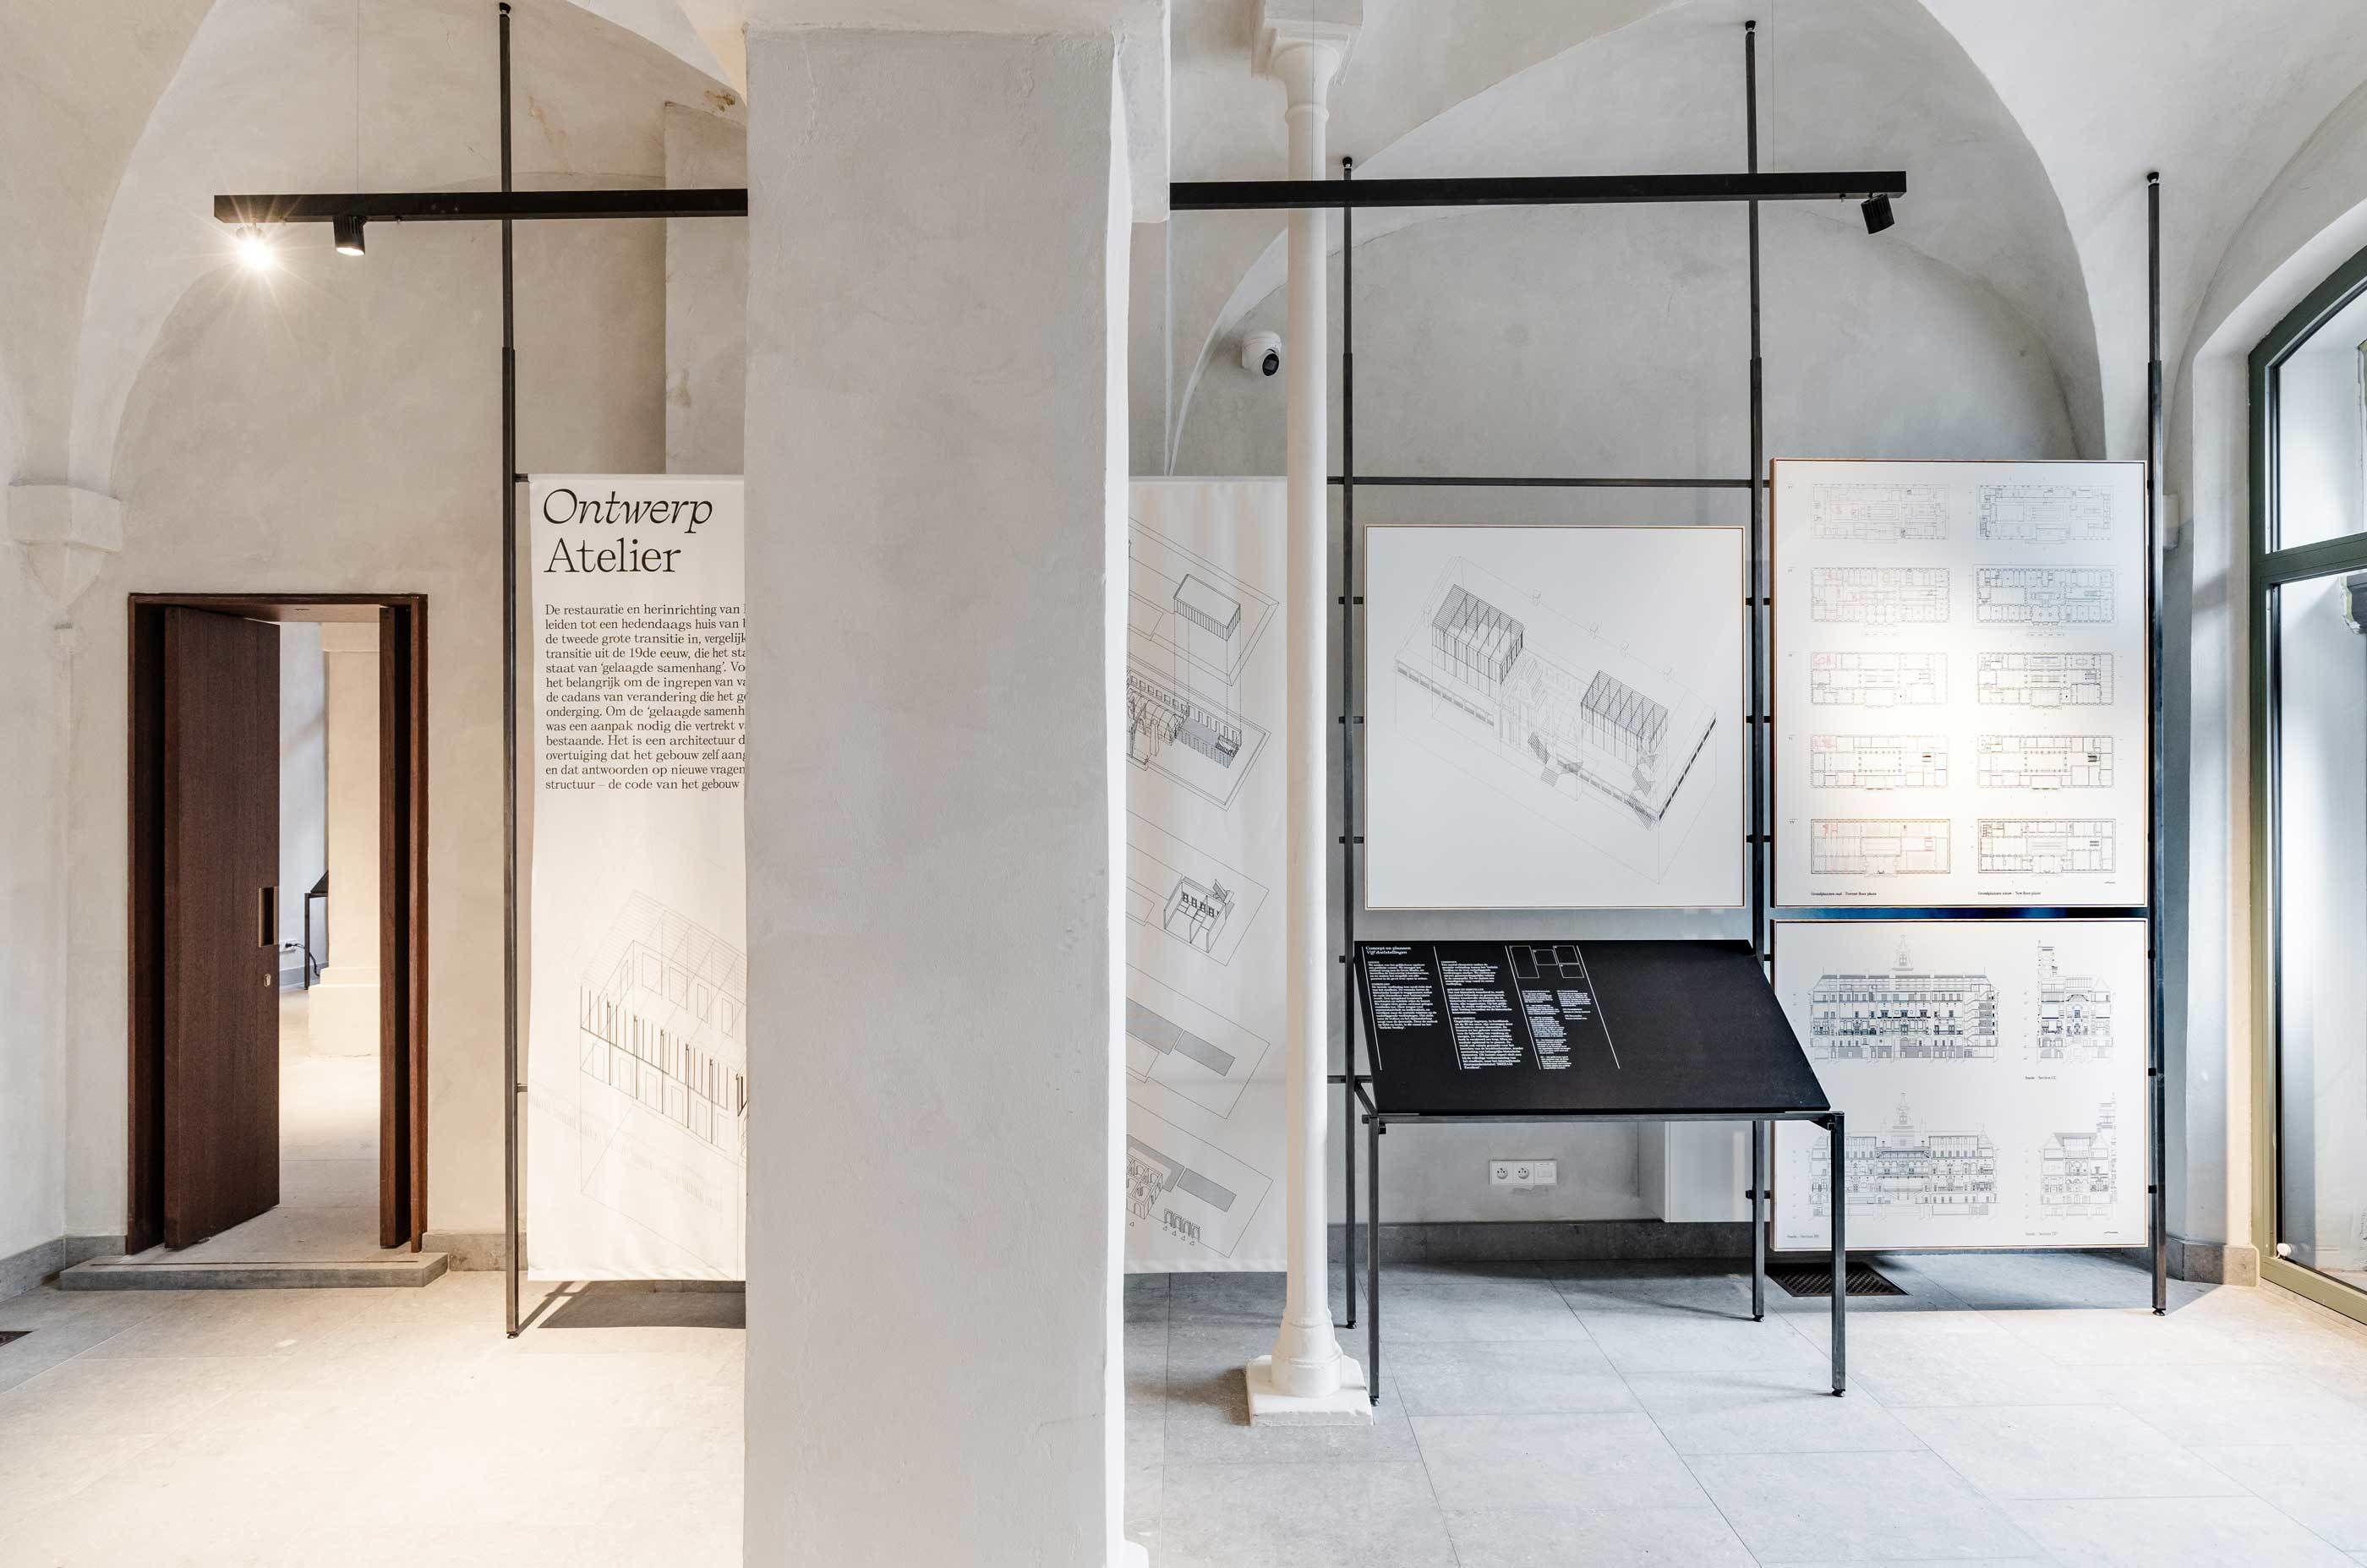 De expo belicht verschillende thema's van onroerend erfgoed en archeologie tot en met de toekomst van Antwerpen.